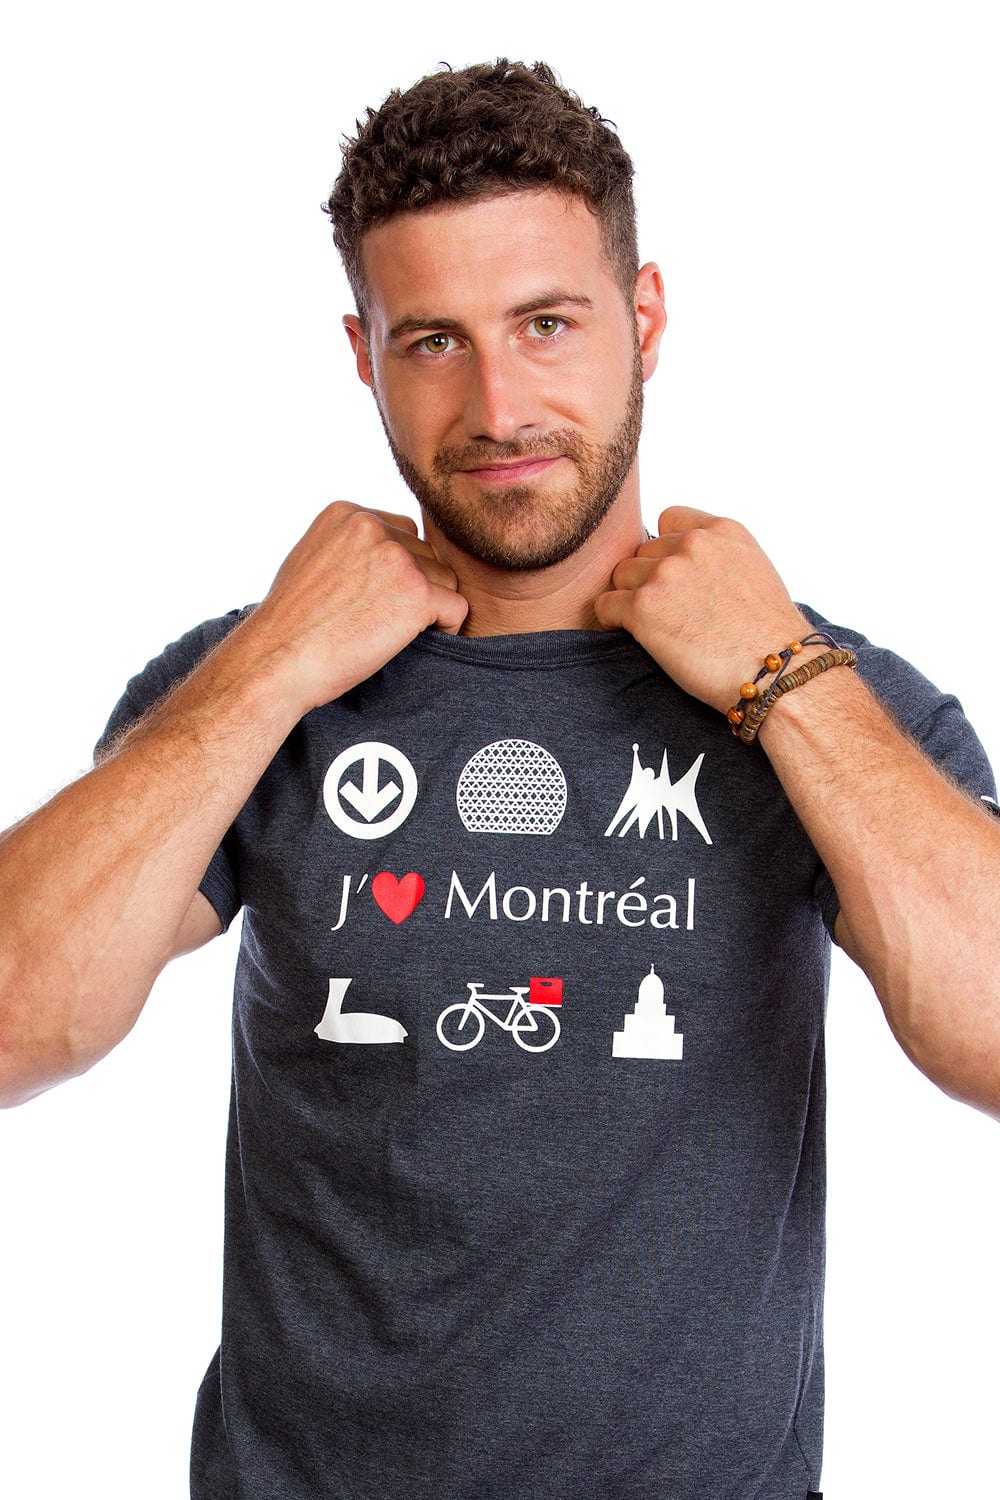 T-shirt pour homme - J'aime Montréal par Plb Design vendu par SignéLocal.com